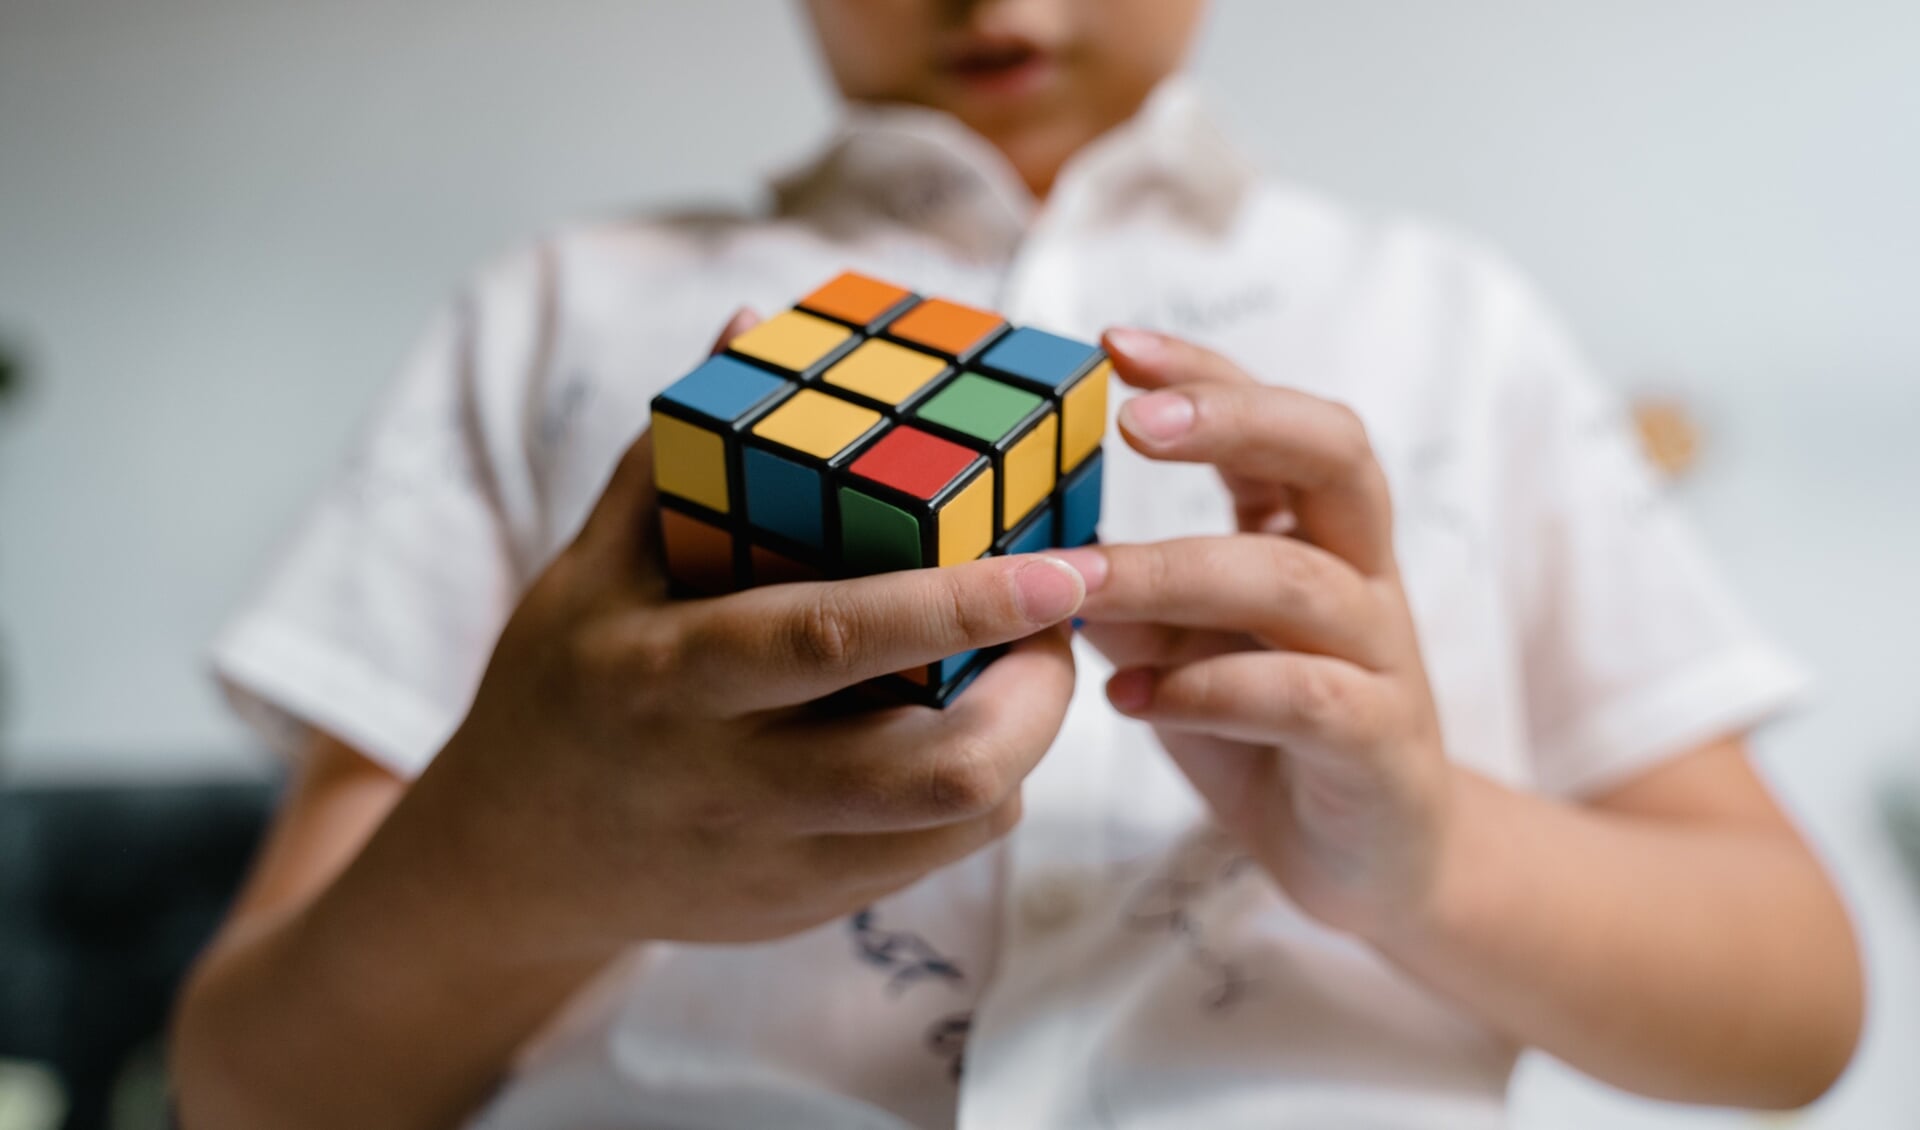 De kubus van Rubik zorgde in het verleden voor vele hoofdbrekens  bij mensen die de puzzel wilden oplossen.